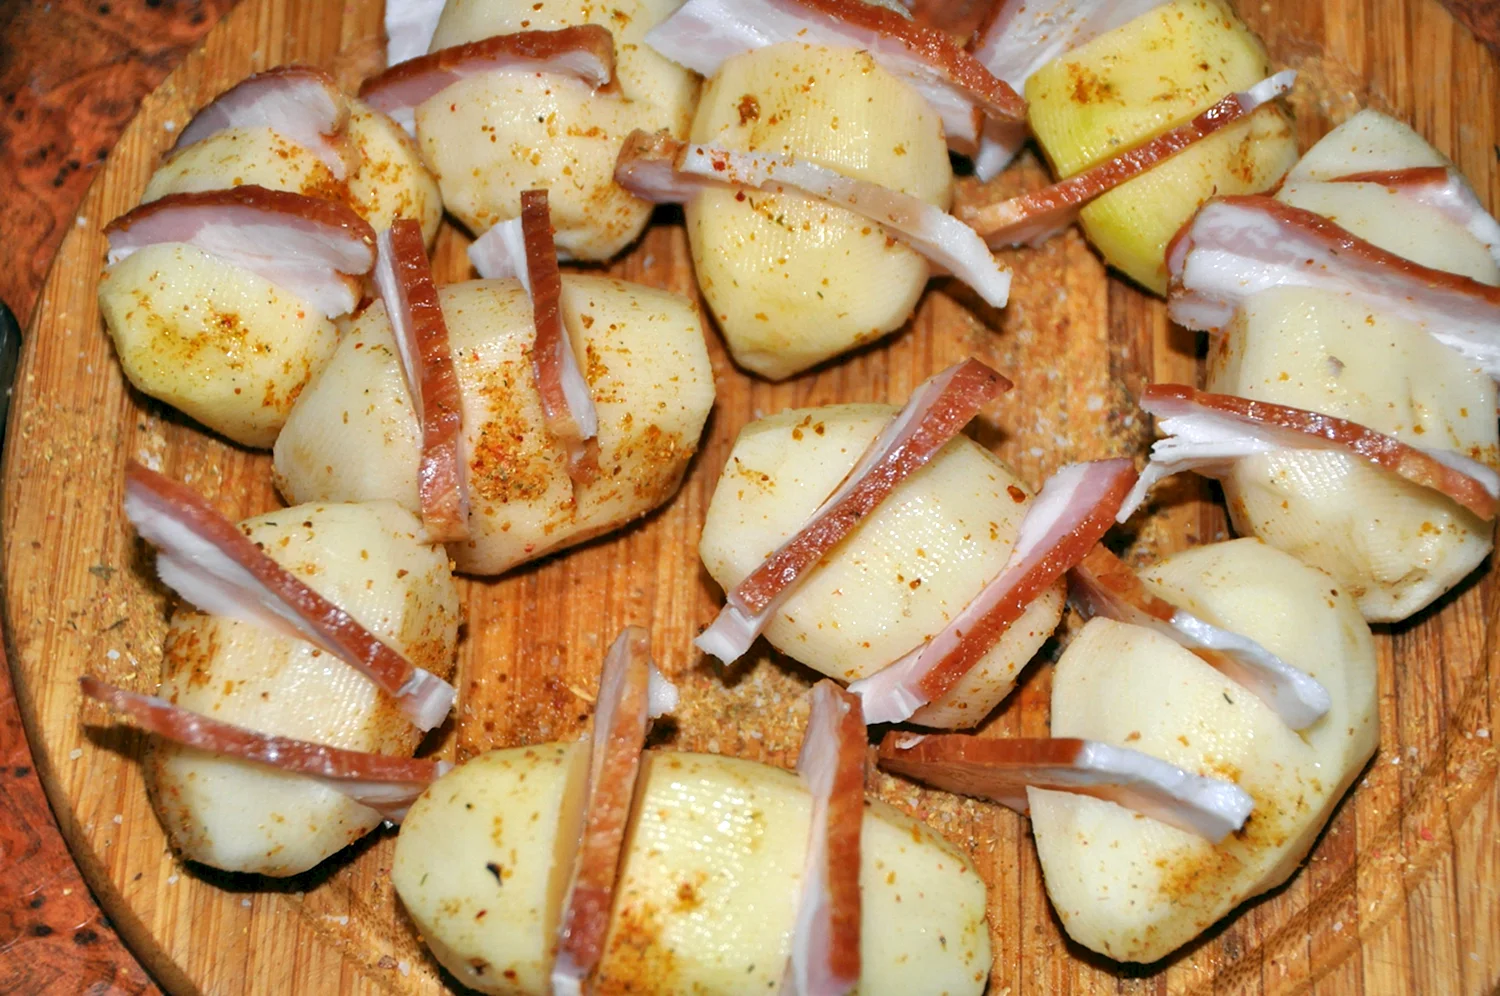 Картошка с беконом в духовке